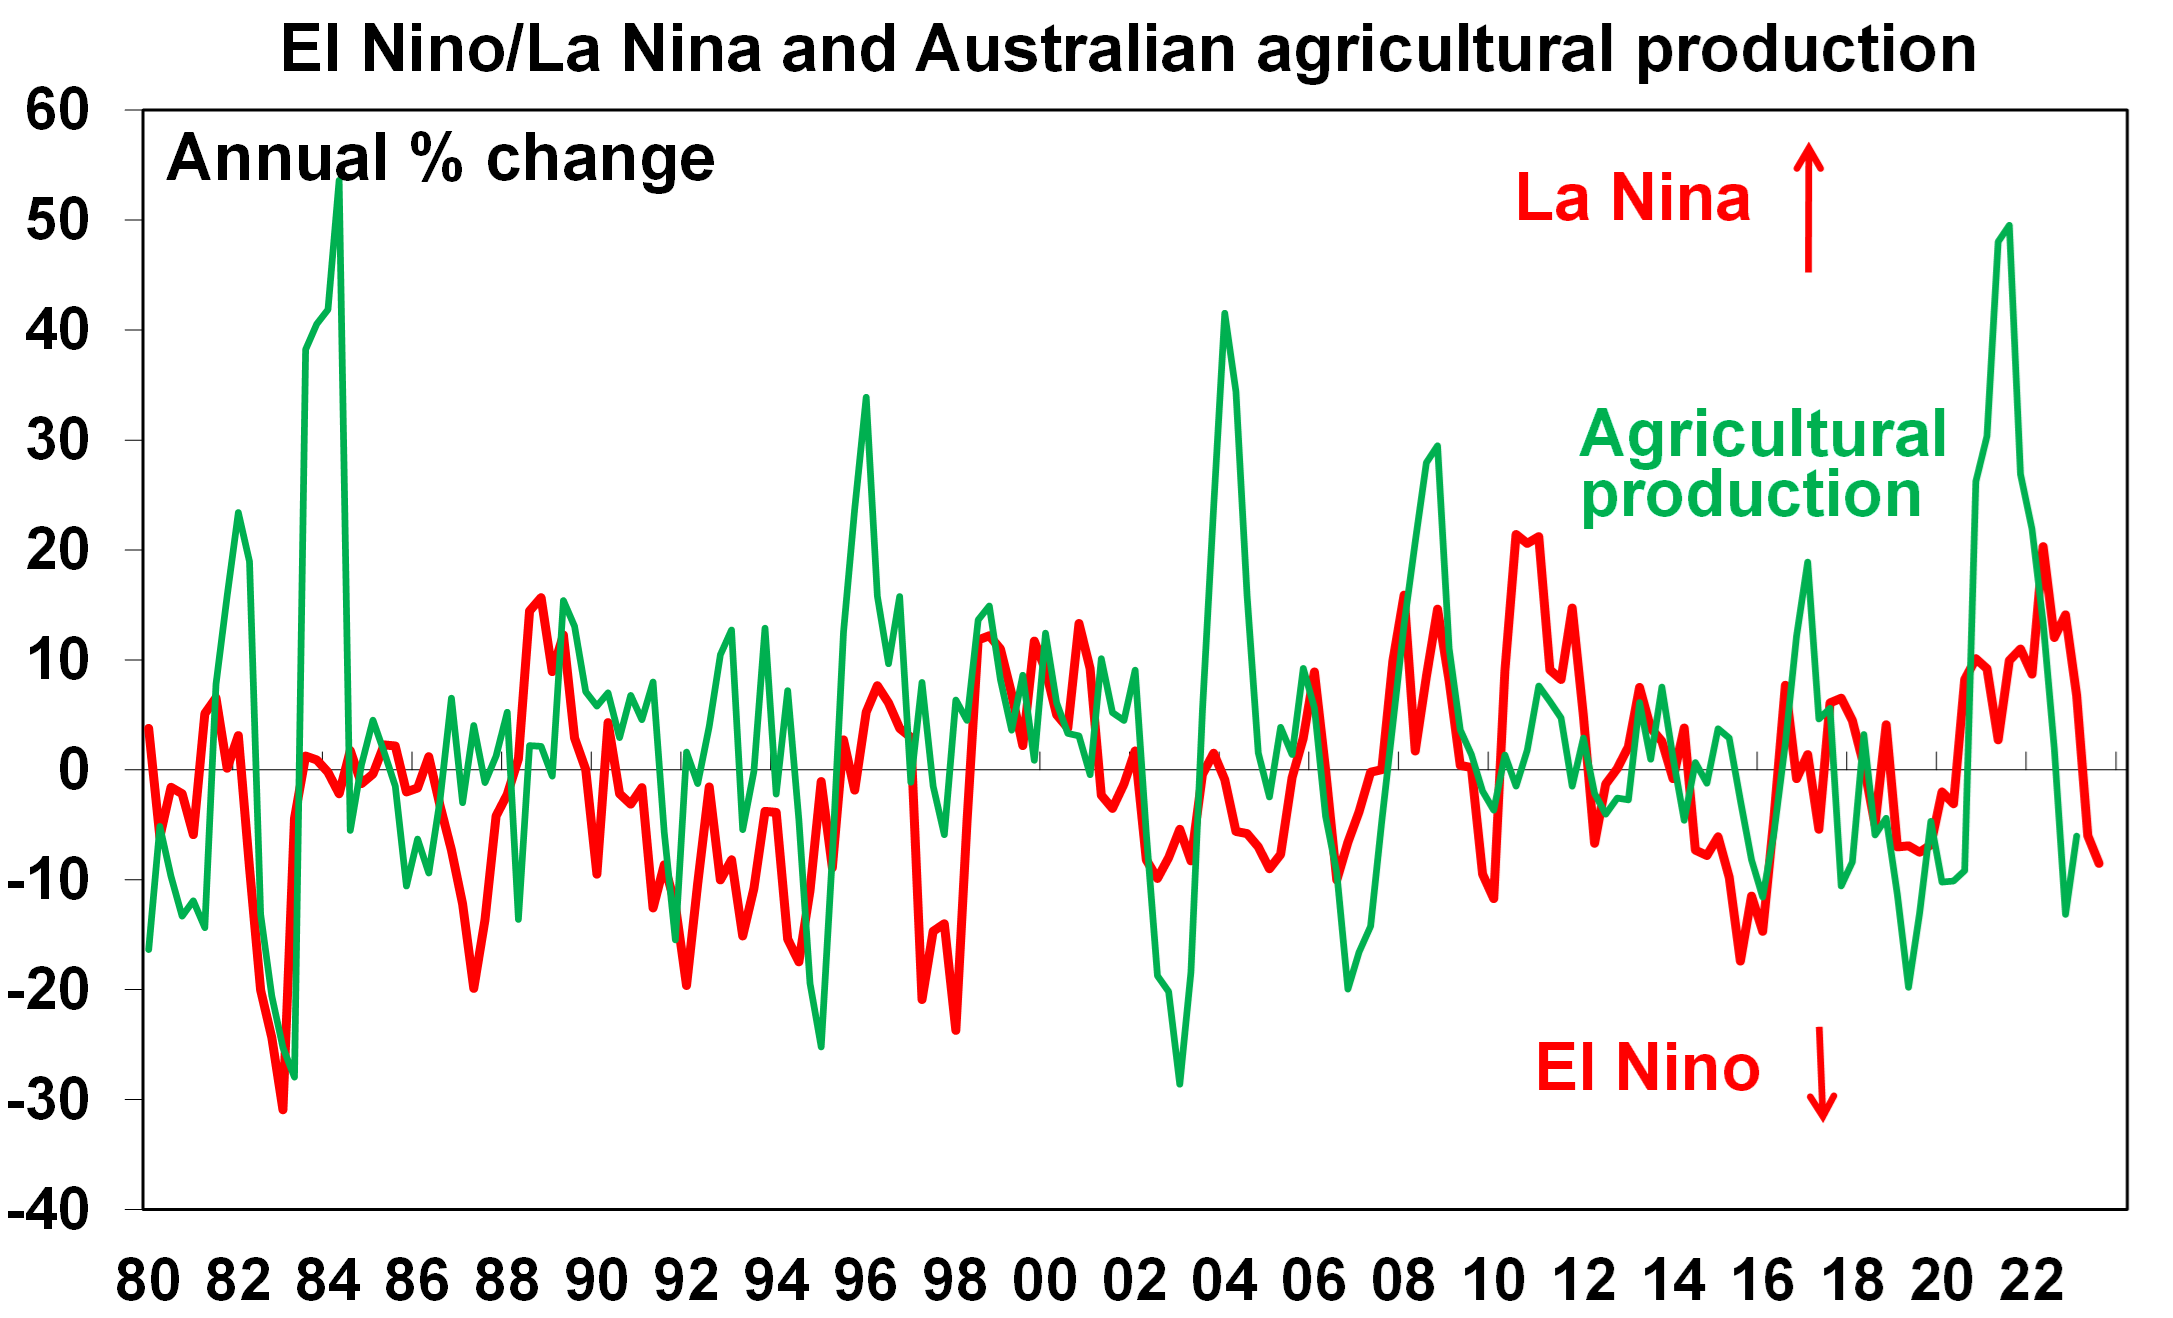 El Nino La Nina and Australian agriculture